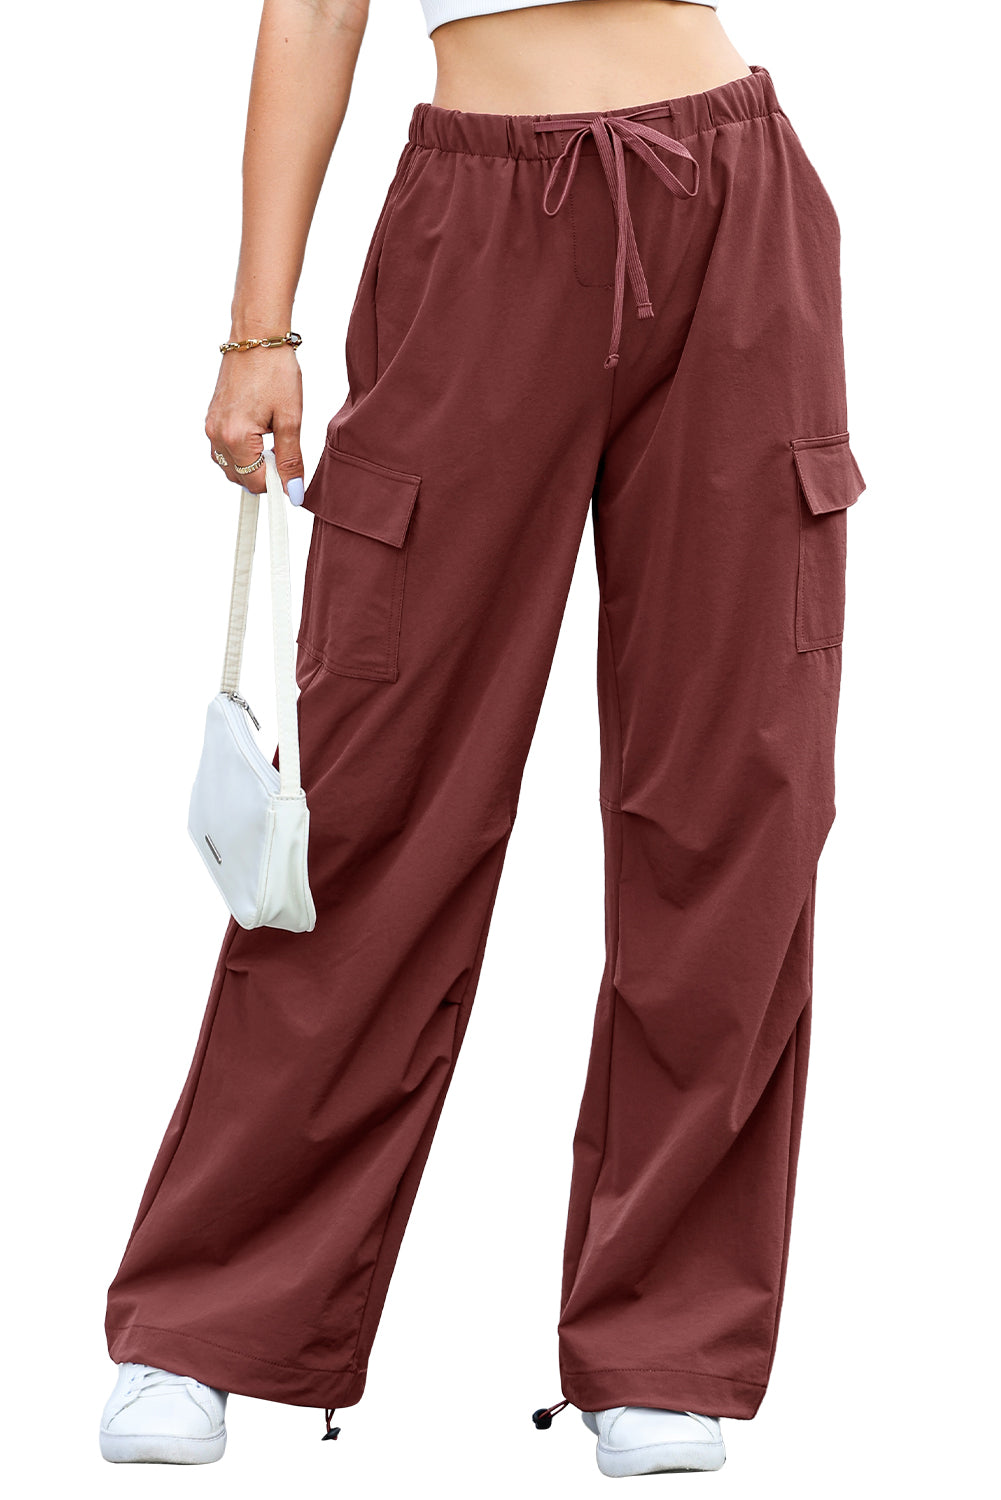 Pantalon cargo à jambe large avec cordon de serrage de couleur unie rouge minéral